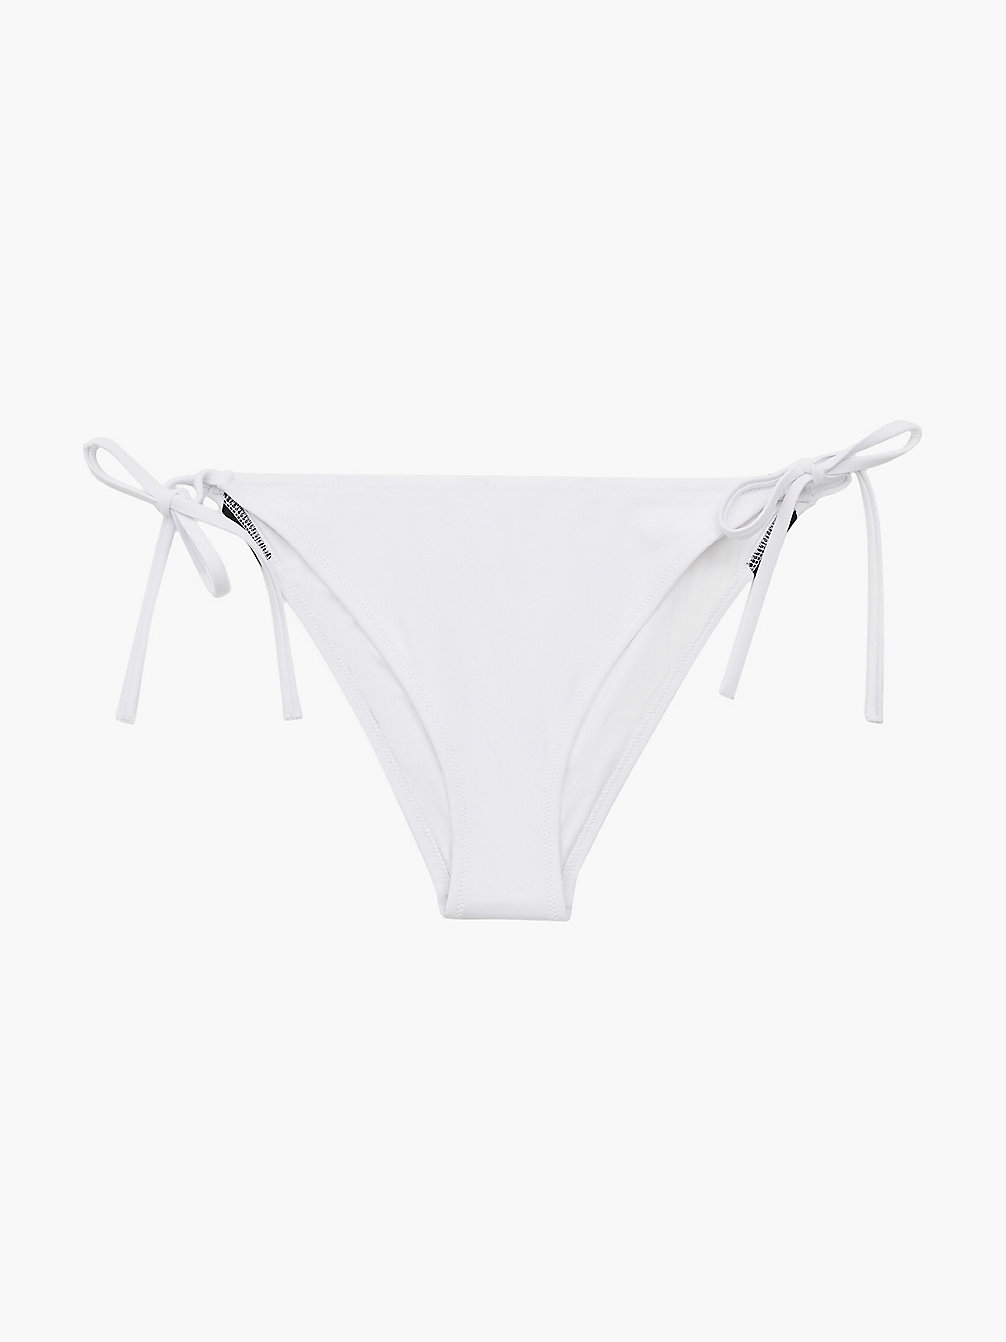 PVH CLASSIC WHITE Bikinihose Zum Binden - Intense Power undefined Damen Calvin Klein